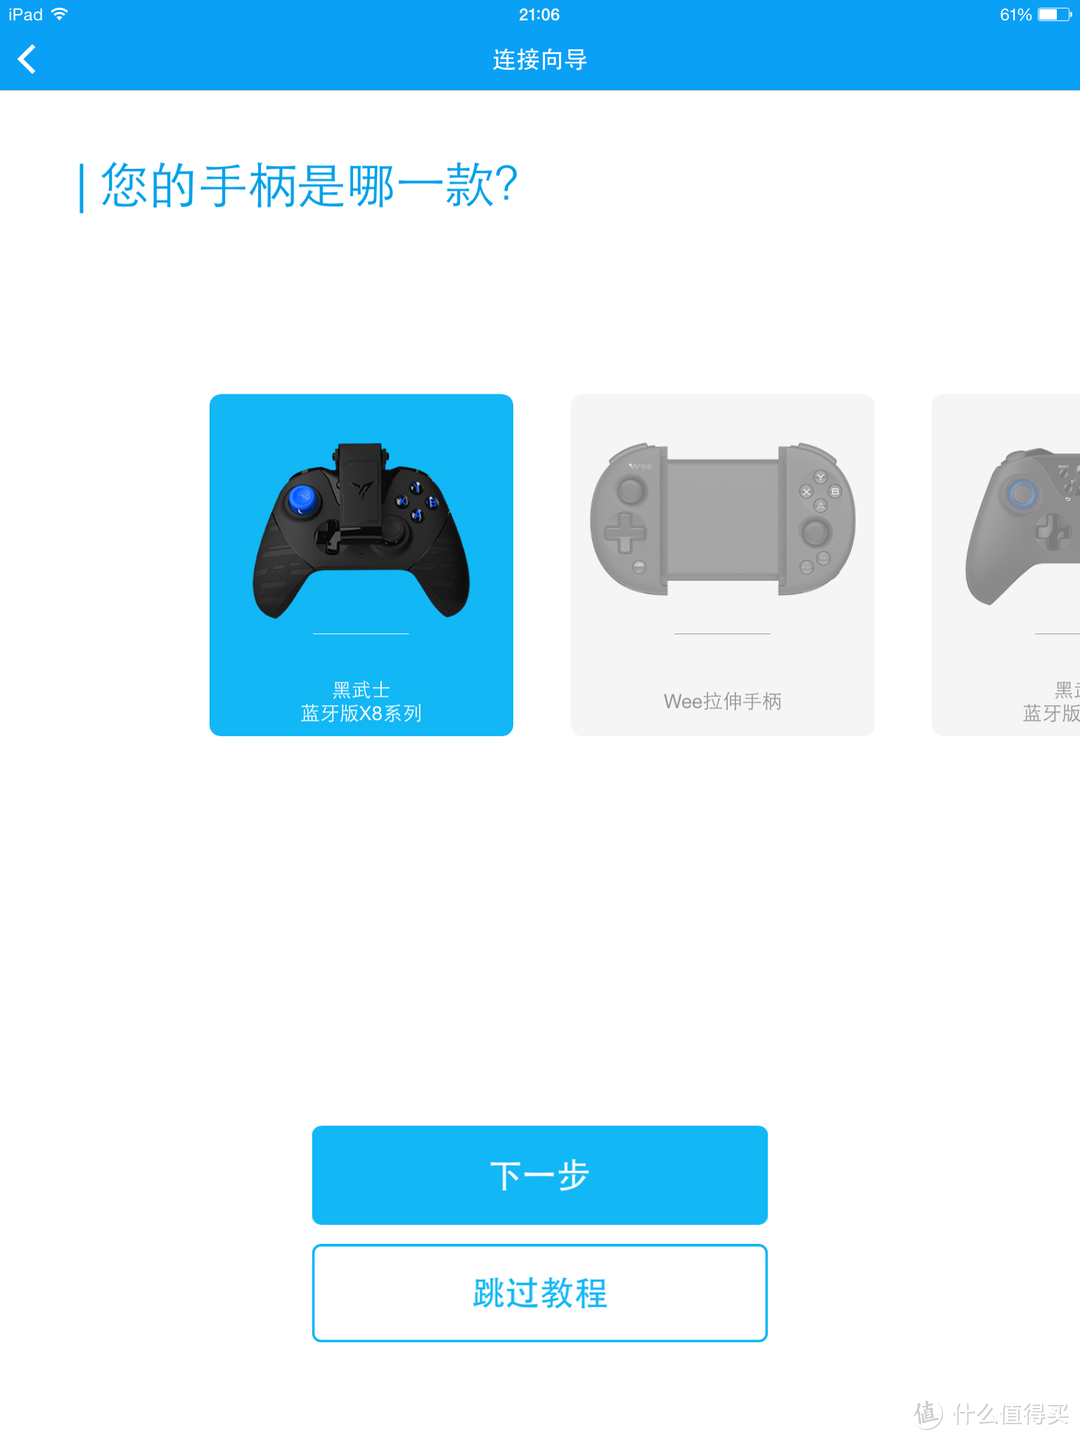 全平台游戏利器——飞智黑武士X8 PRO 游戏手柄评测